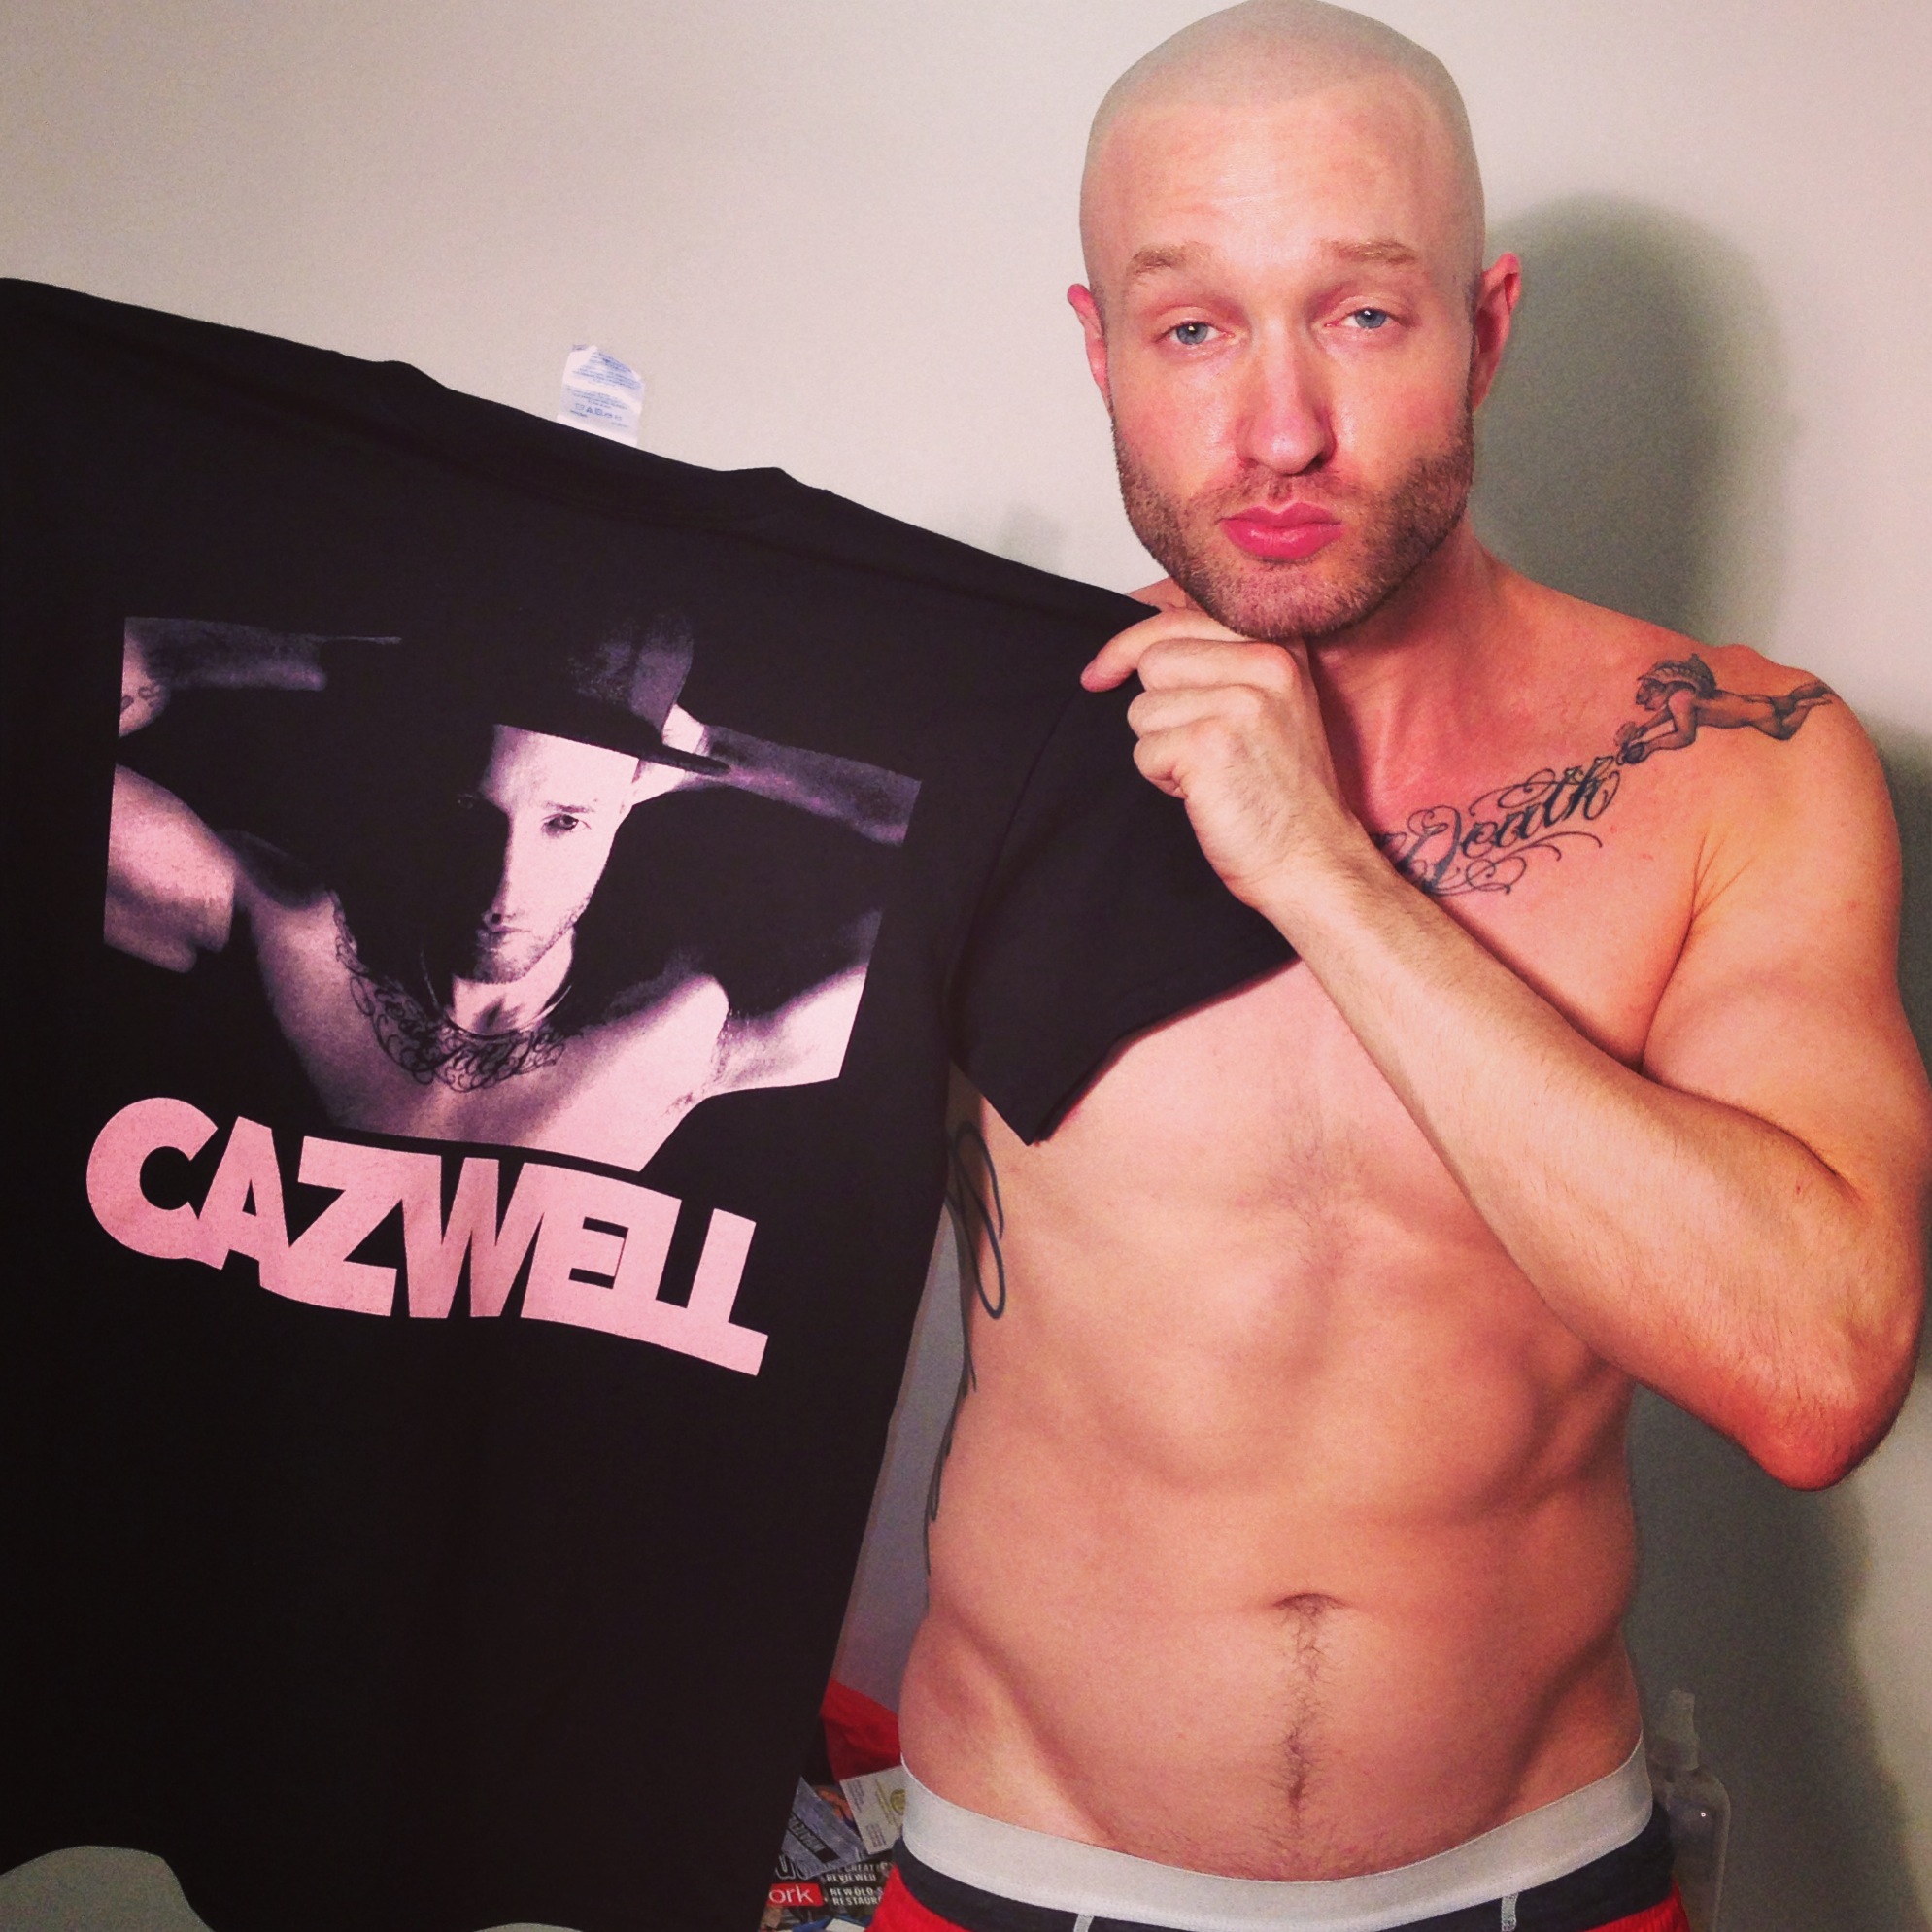 Cazwell también sufre la homofobia